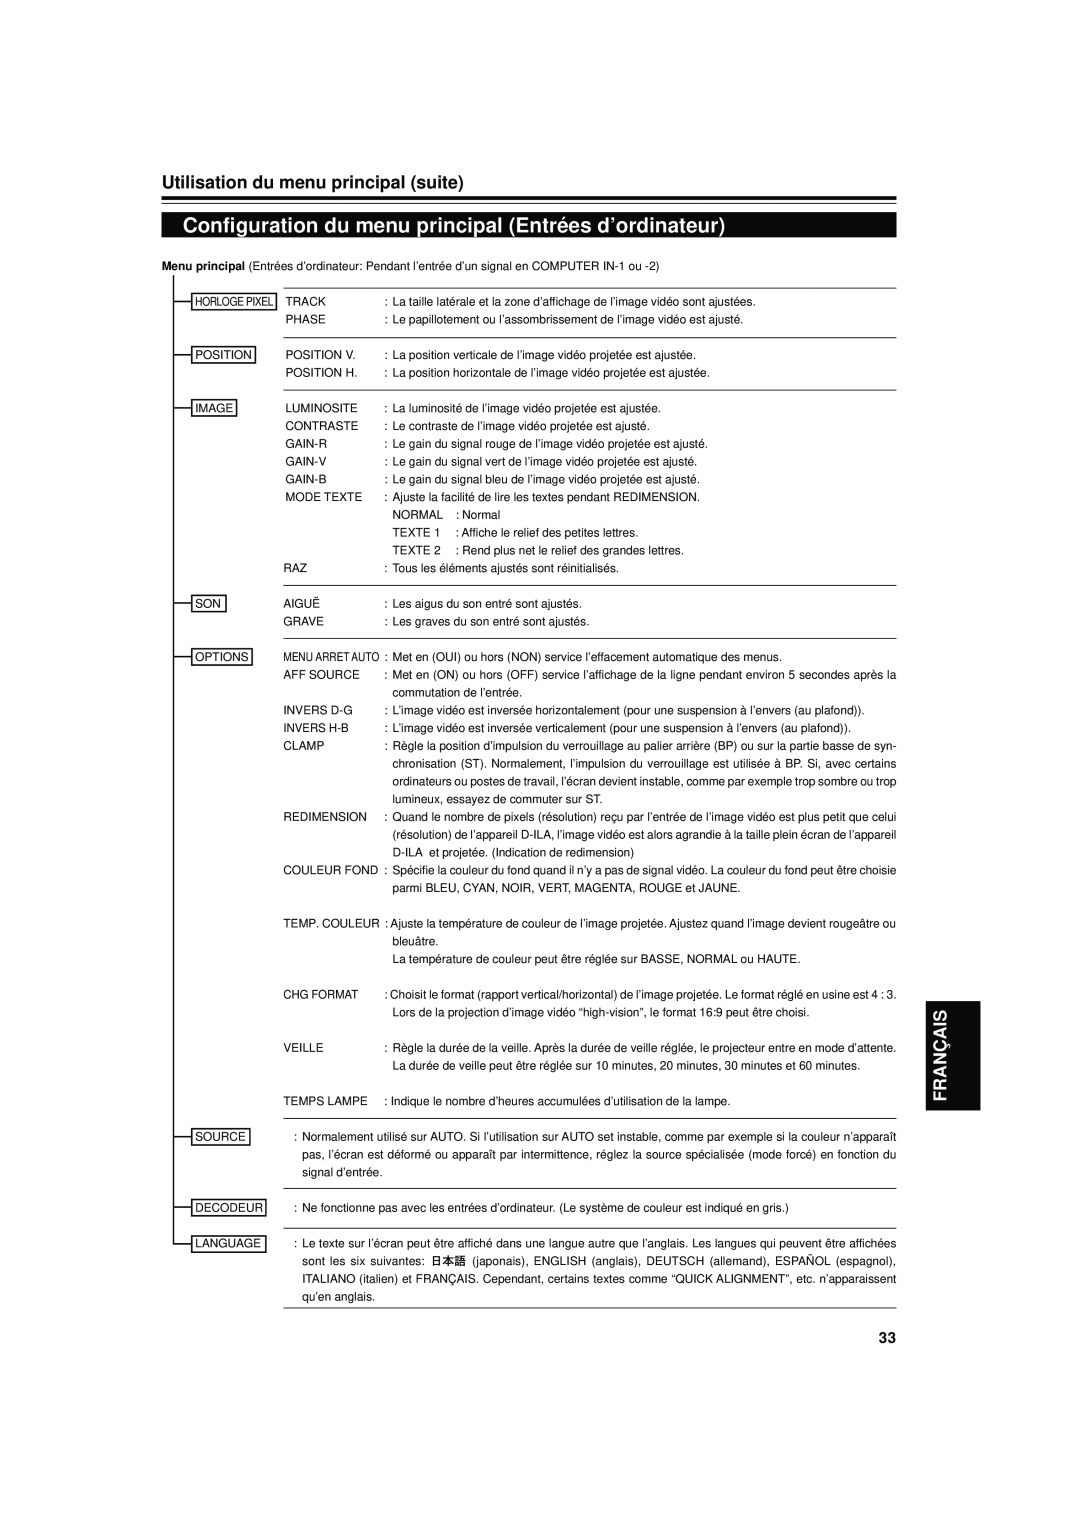 JVC DLA-S15U manual Configuration du menu principal Entrées d’ordinateur, Utilisation du menu principal suite, Français 